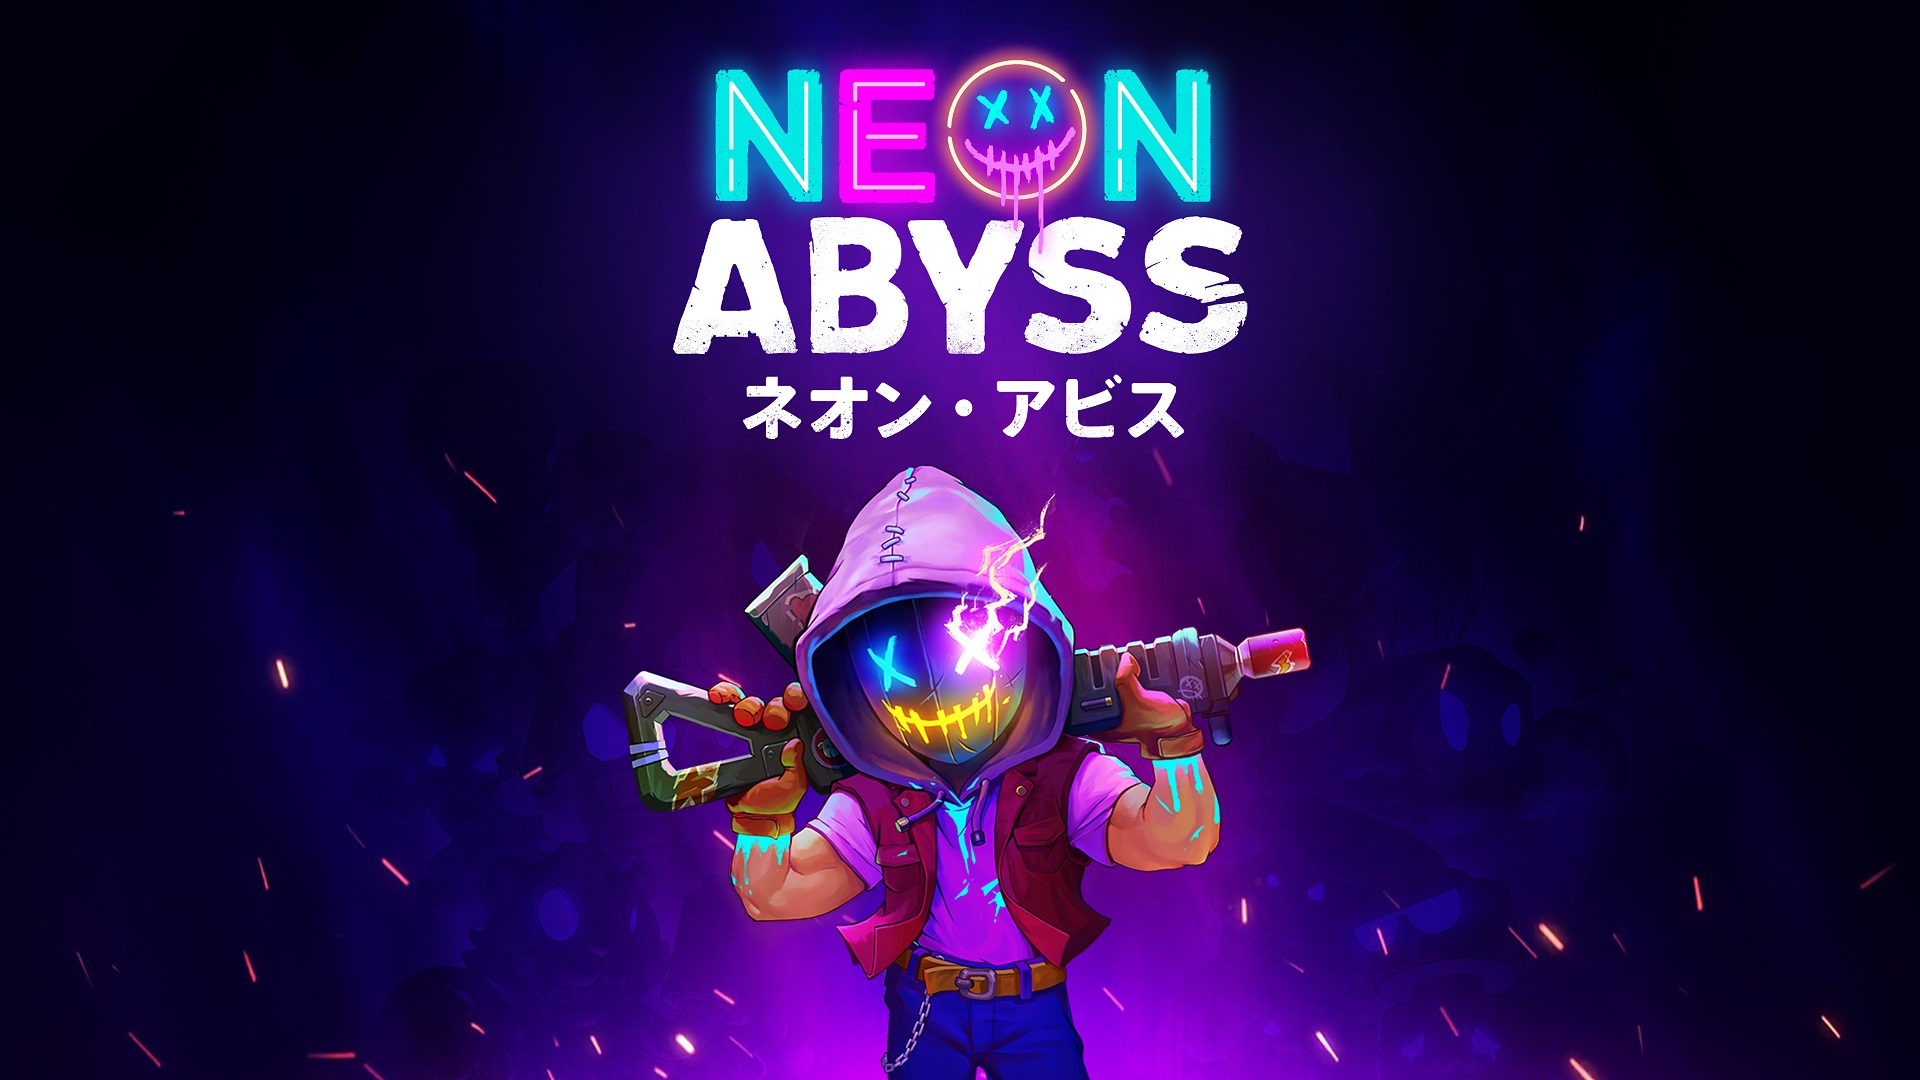 シューティングアクション Neon Abyss のswitch Pc Steam 版が本日配信 2人のキャラが登場する追加コンテンツも同時リリース